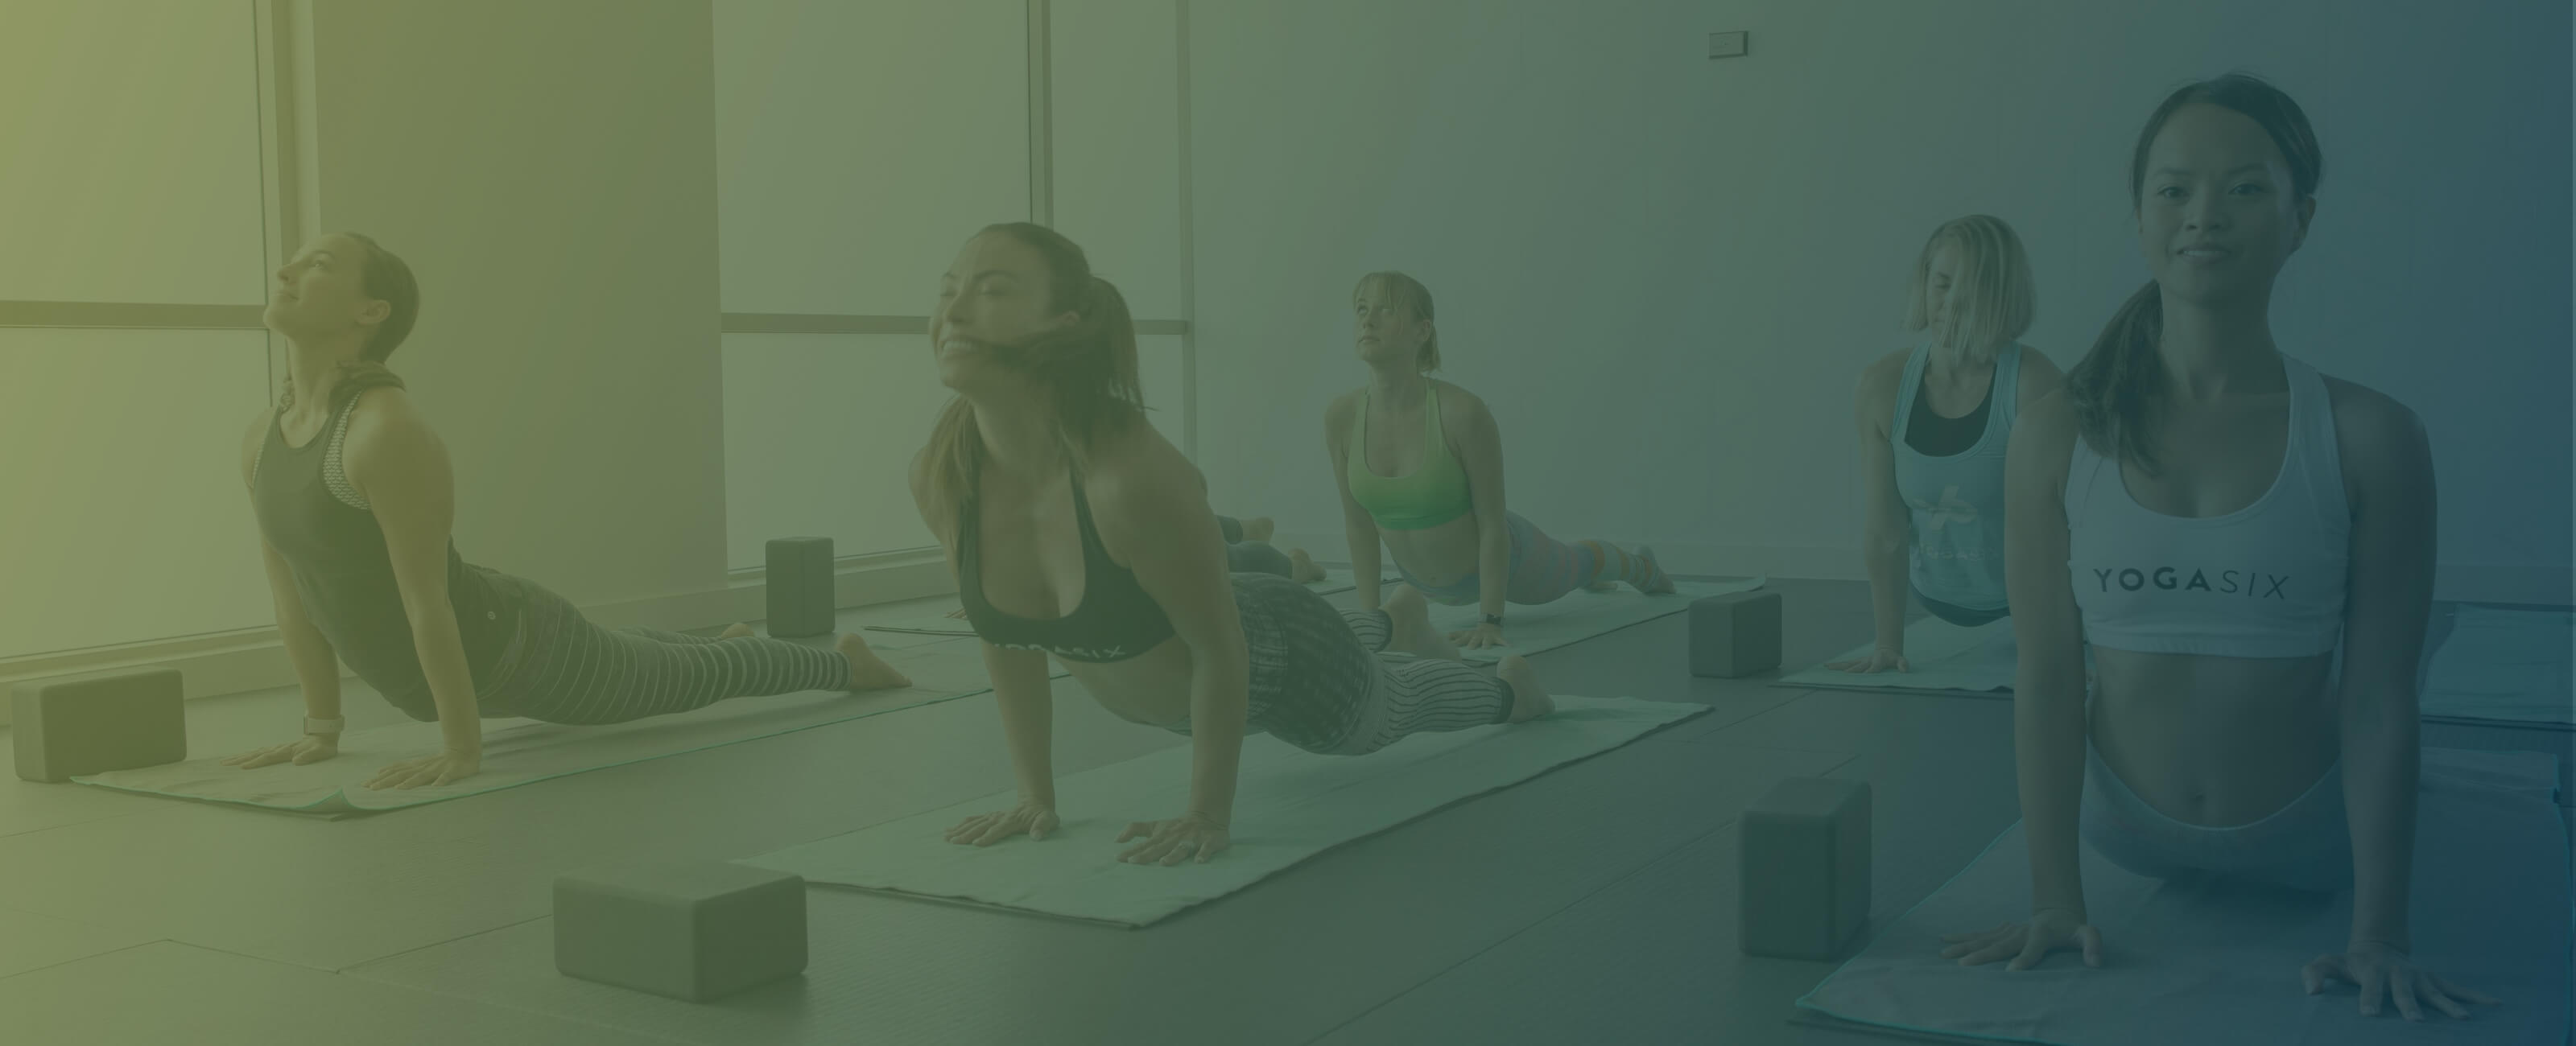 Udana Yoga and Wellness - Yoga Studio in Oak Creek